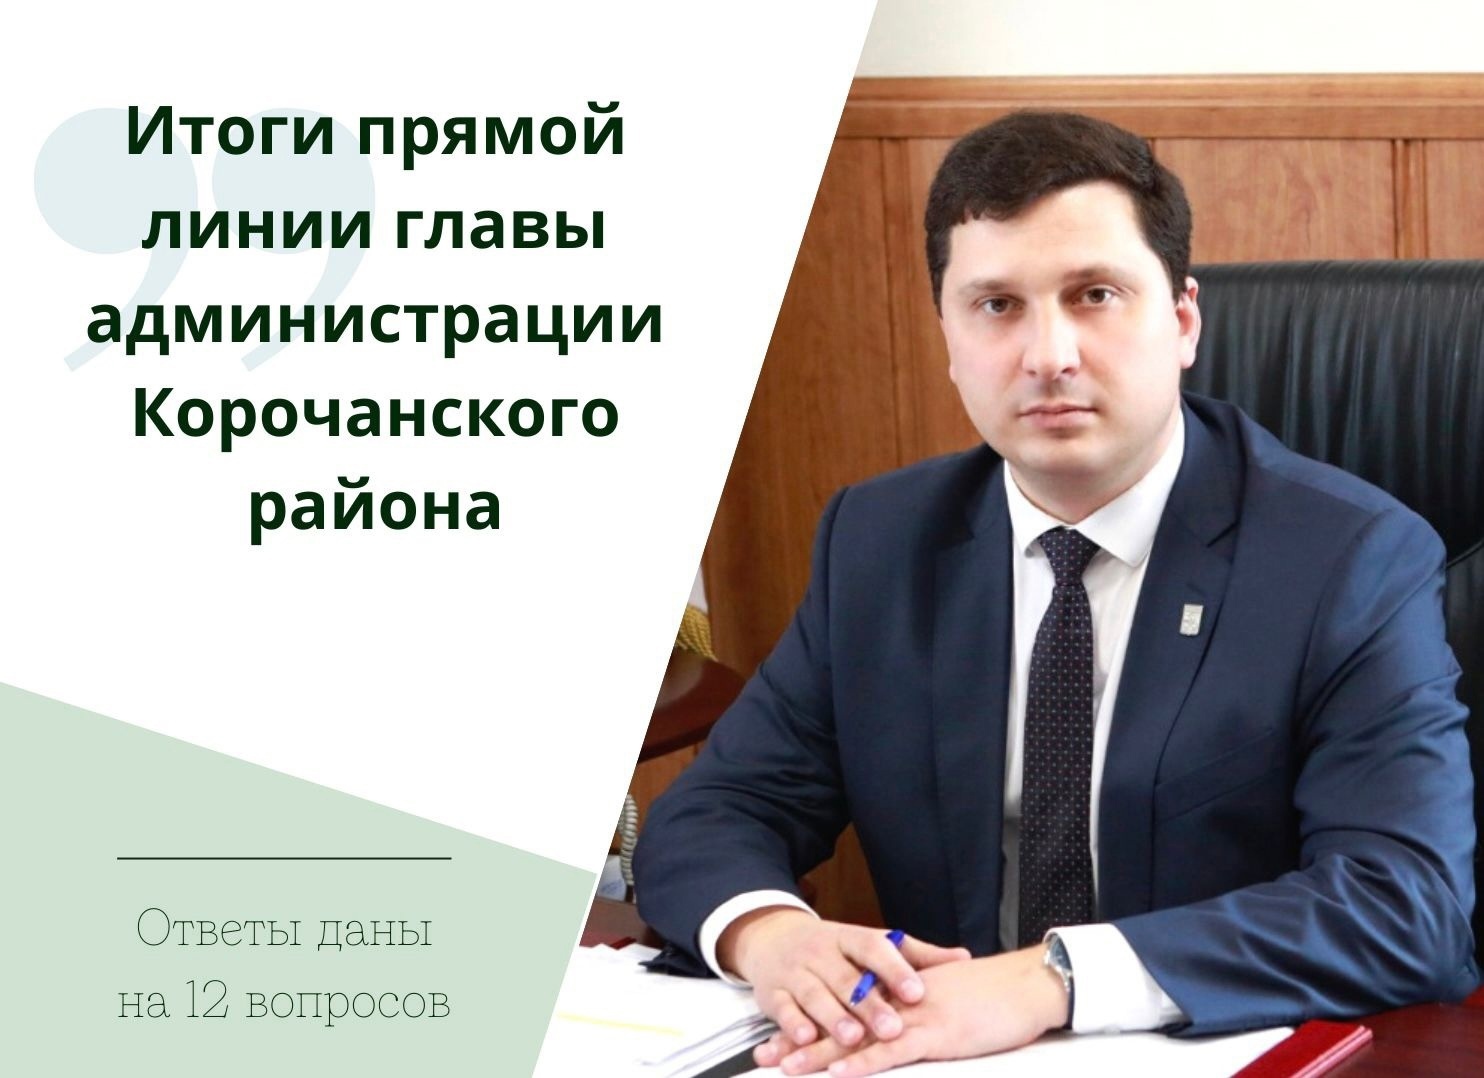 Глава администрации района Николай Нестеров в ходе прямого эфира ответил на 12 обращений